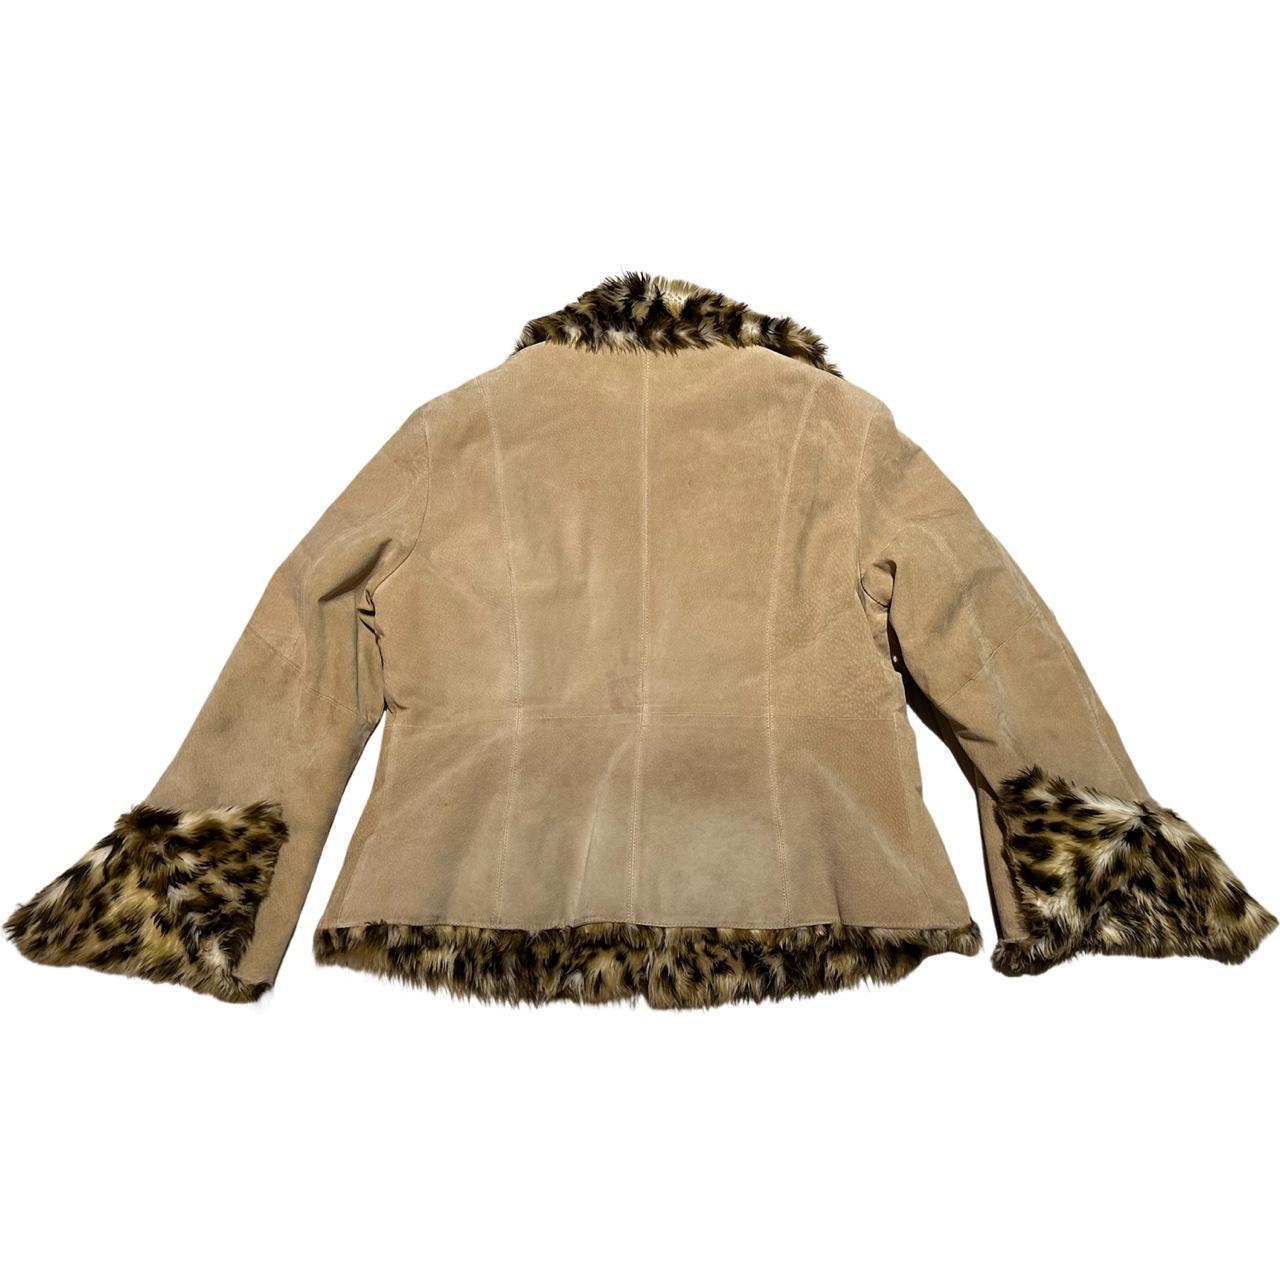 Cheetah Print Fur And Suede jacket